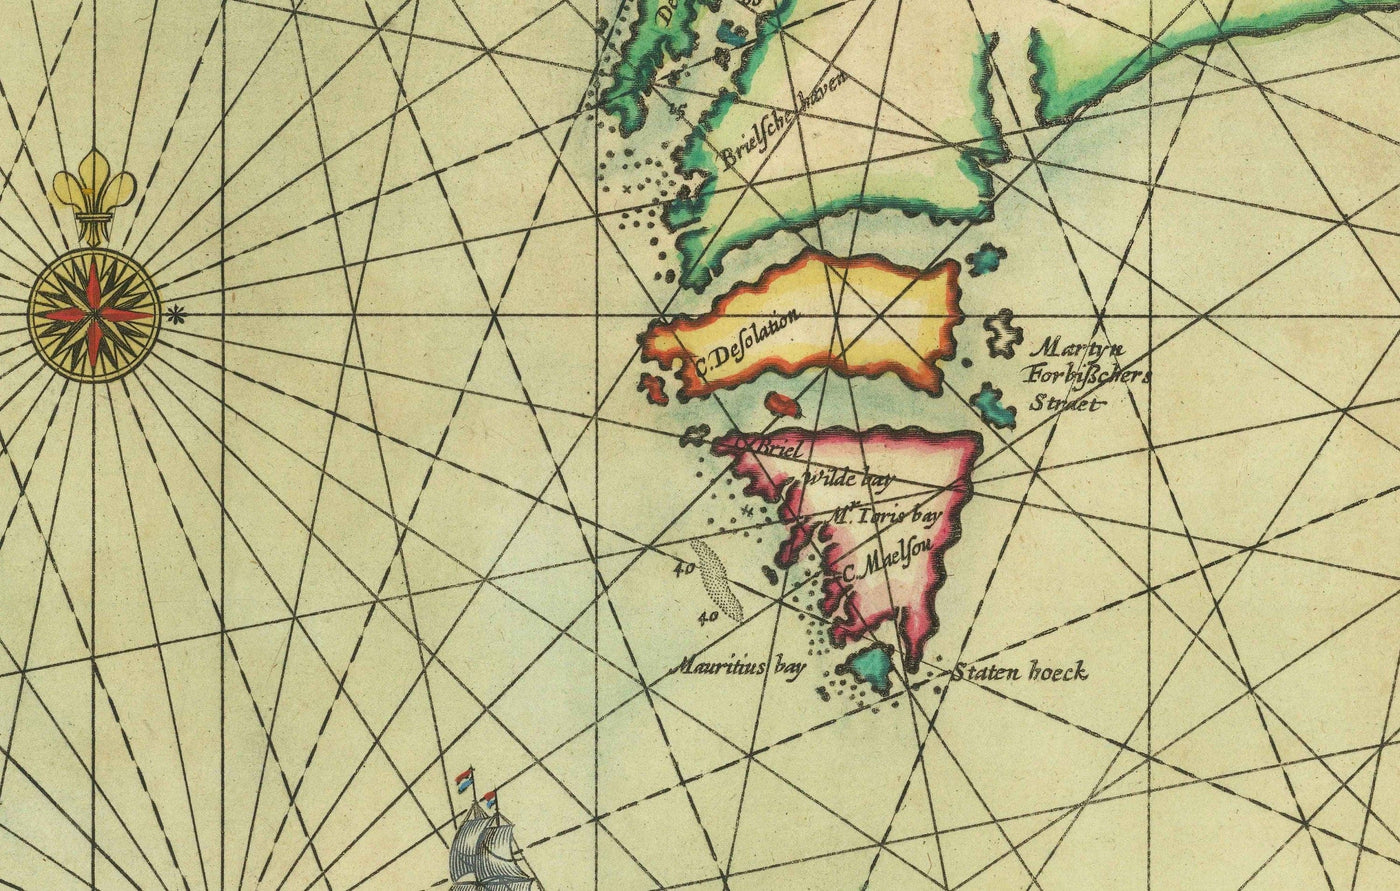 Alte Karte von Grönland, Island und der Nordsee, 1661 von van Loon - Karte zur Erforschung der Wikinger